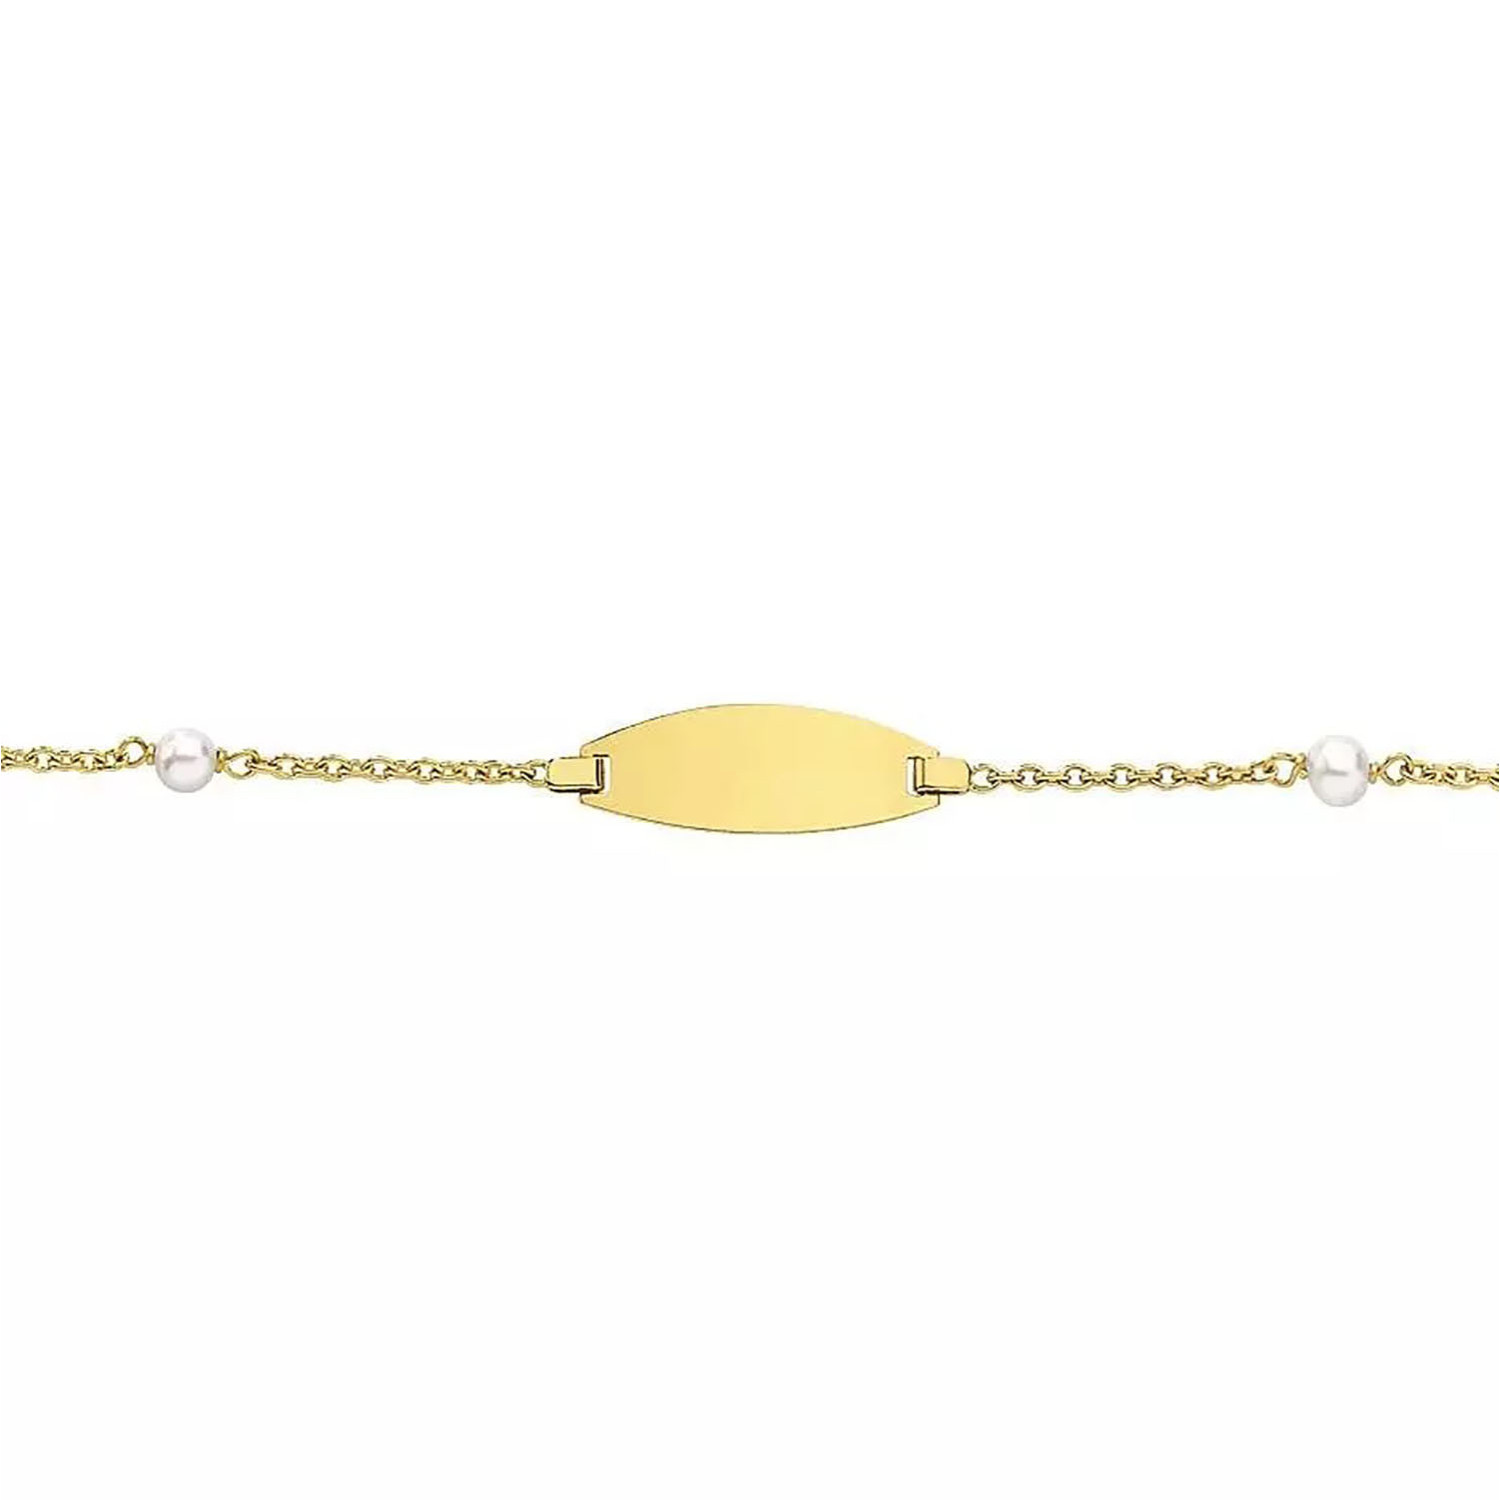 Bracelet identité bébé or jaune 18 carats 2 perles